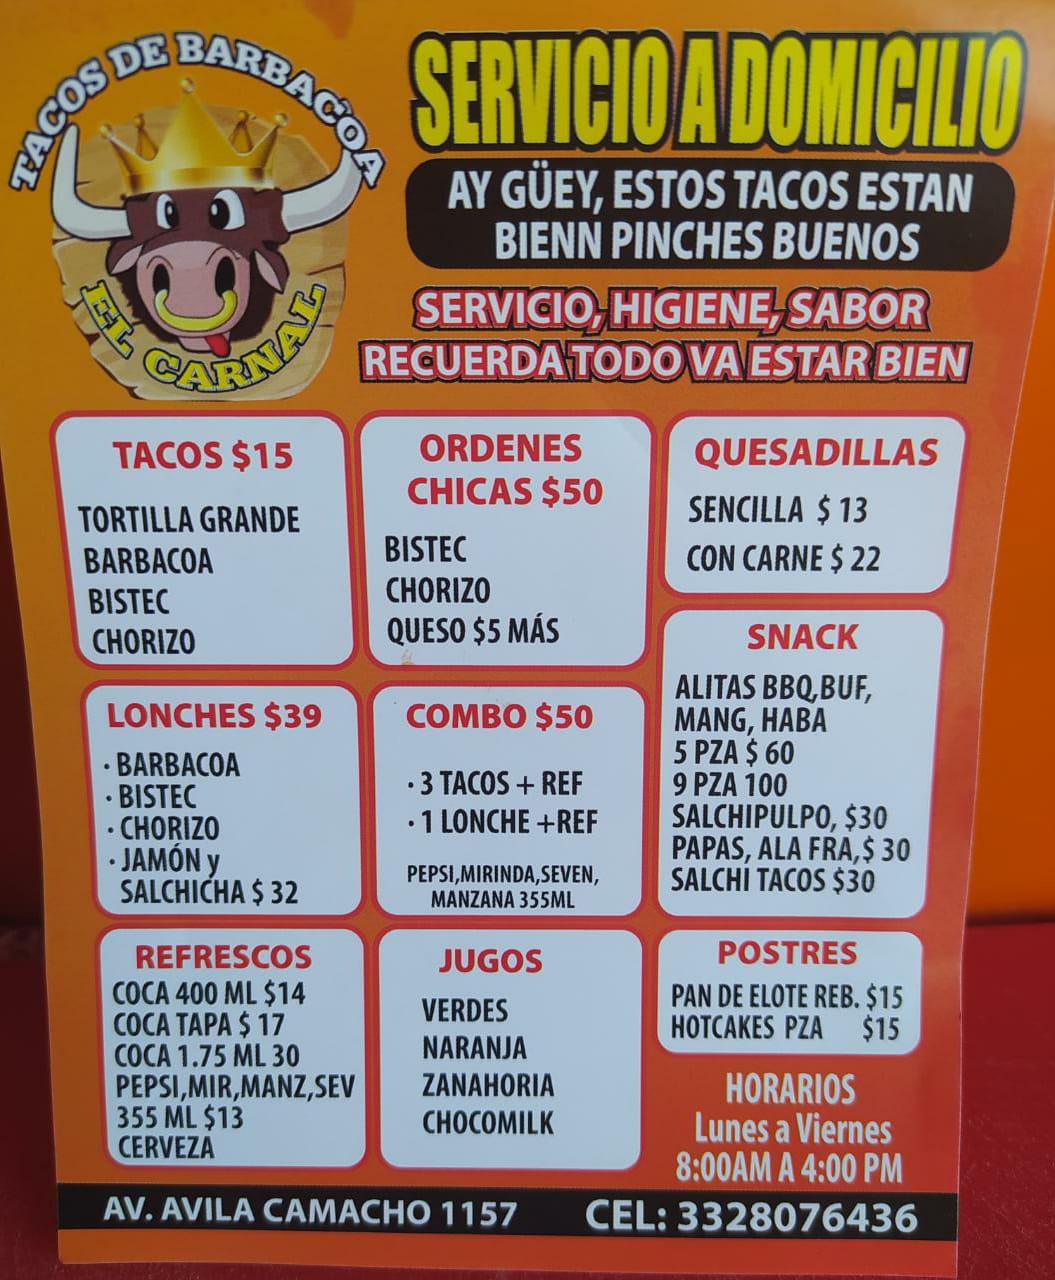 Tacos de Barbacoa el Carnal